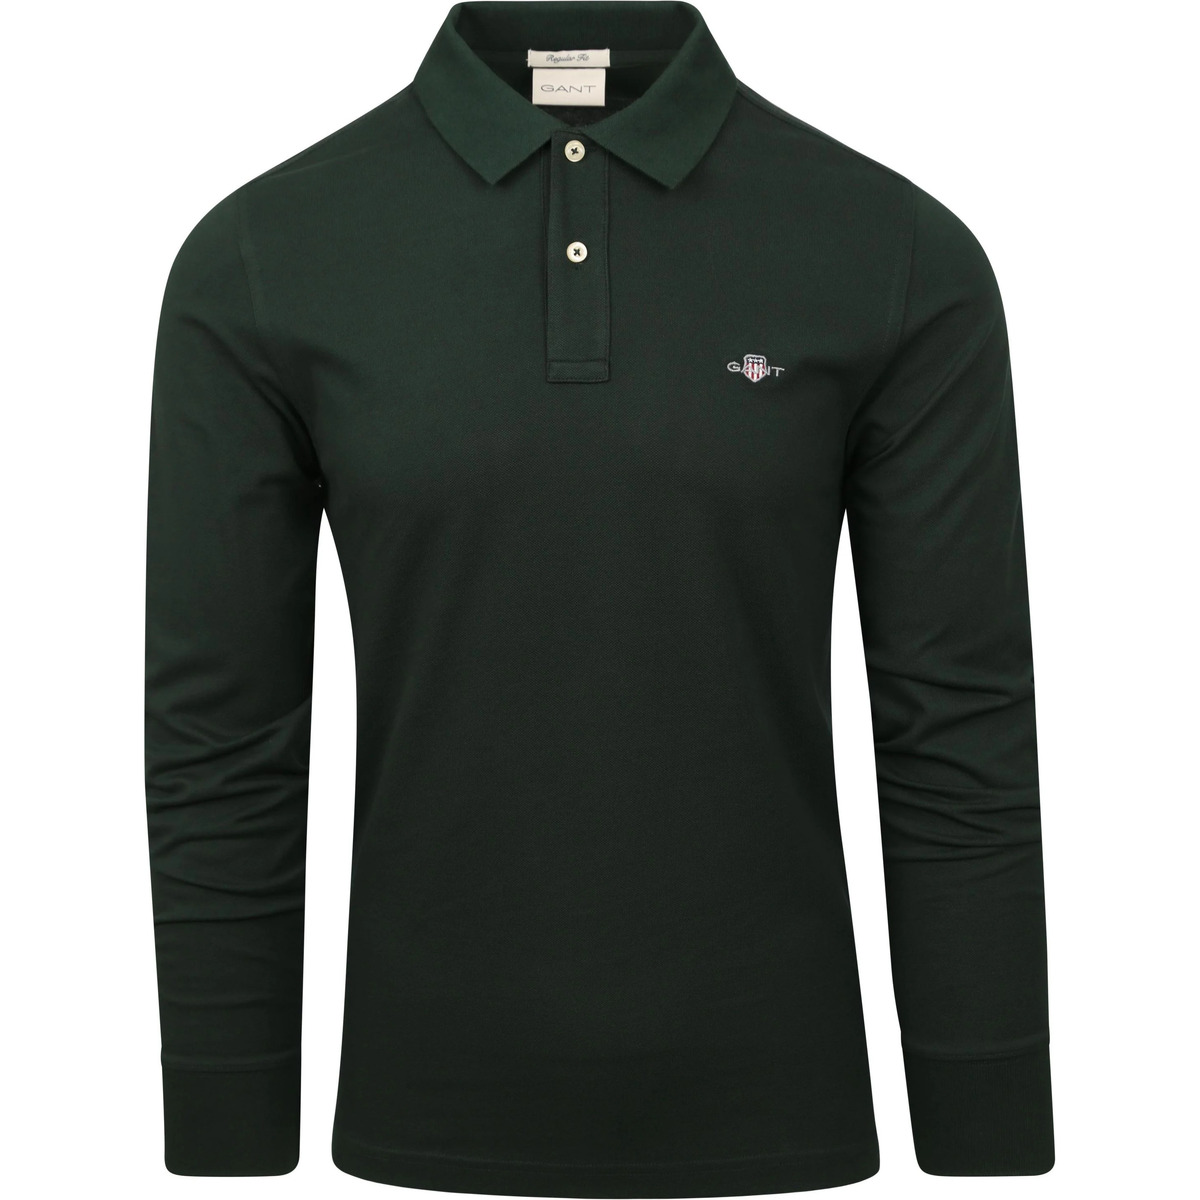 Vêtements Homme T-shirts & mats Polos Gant Rugger Pique mats Polo Dark Green Vert